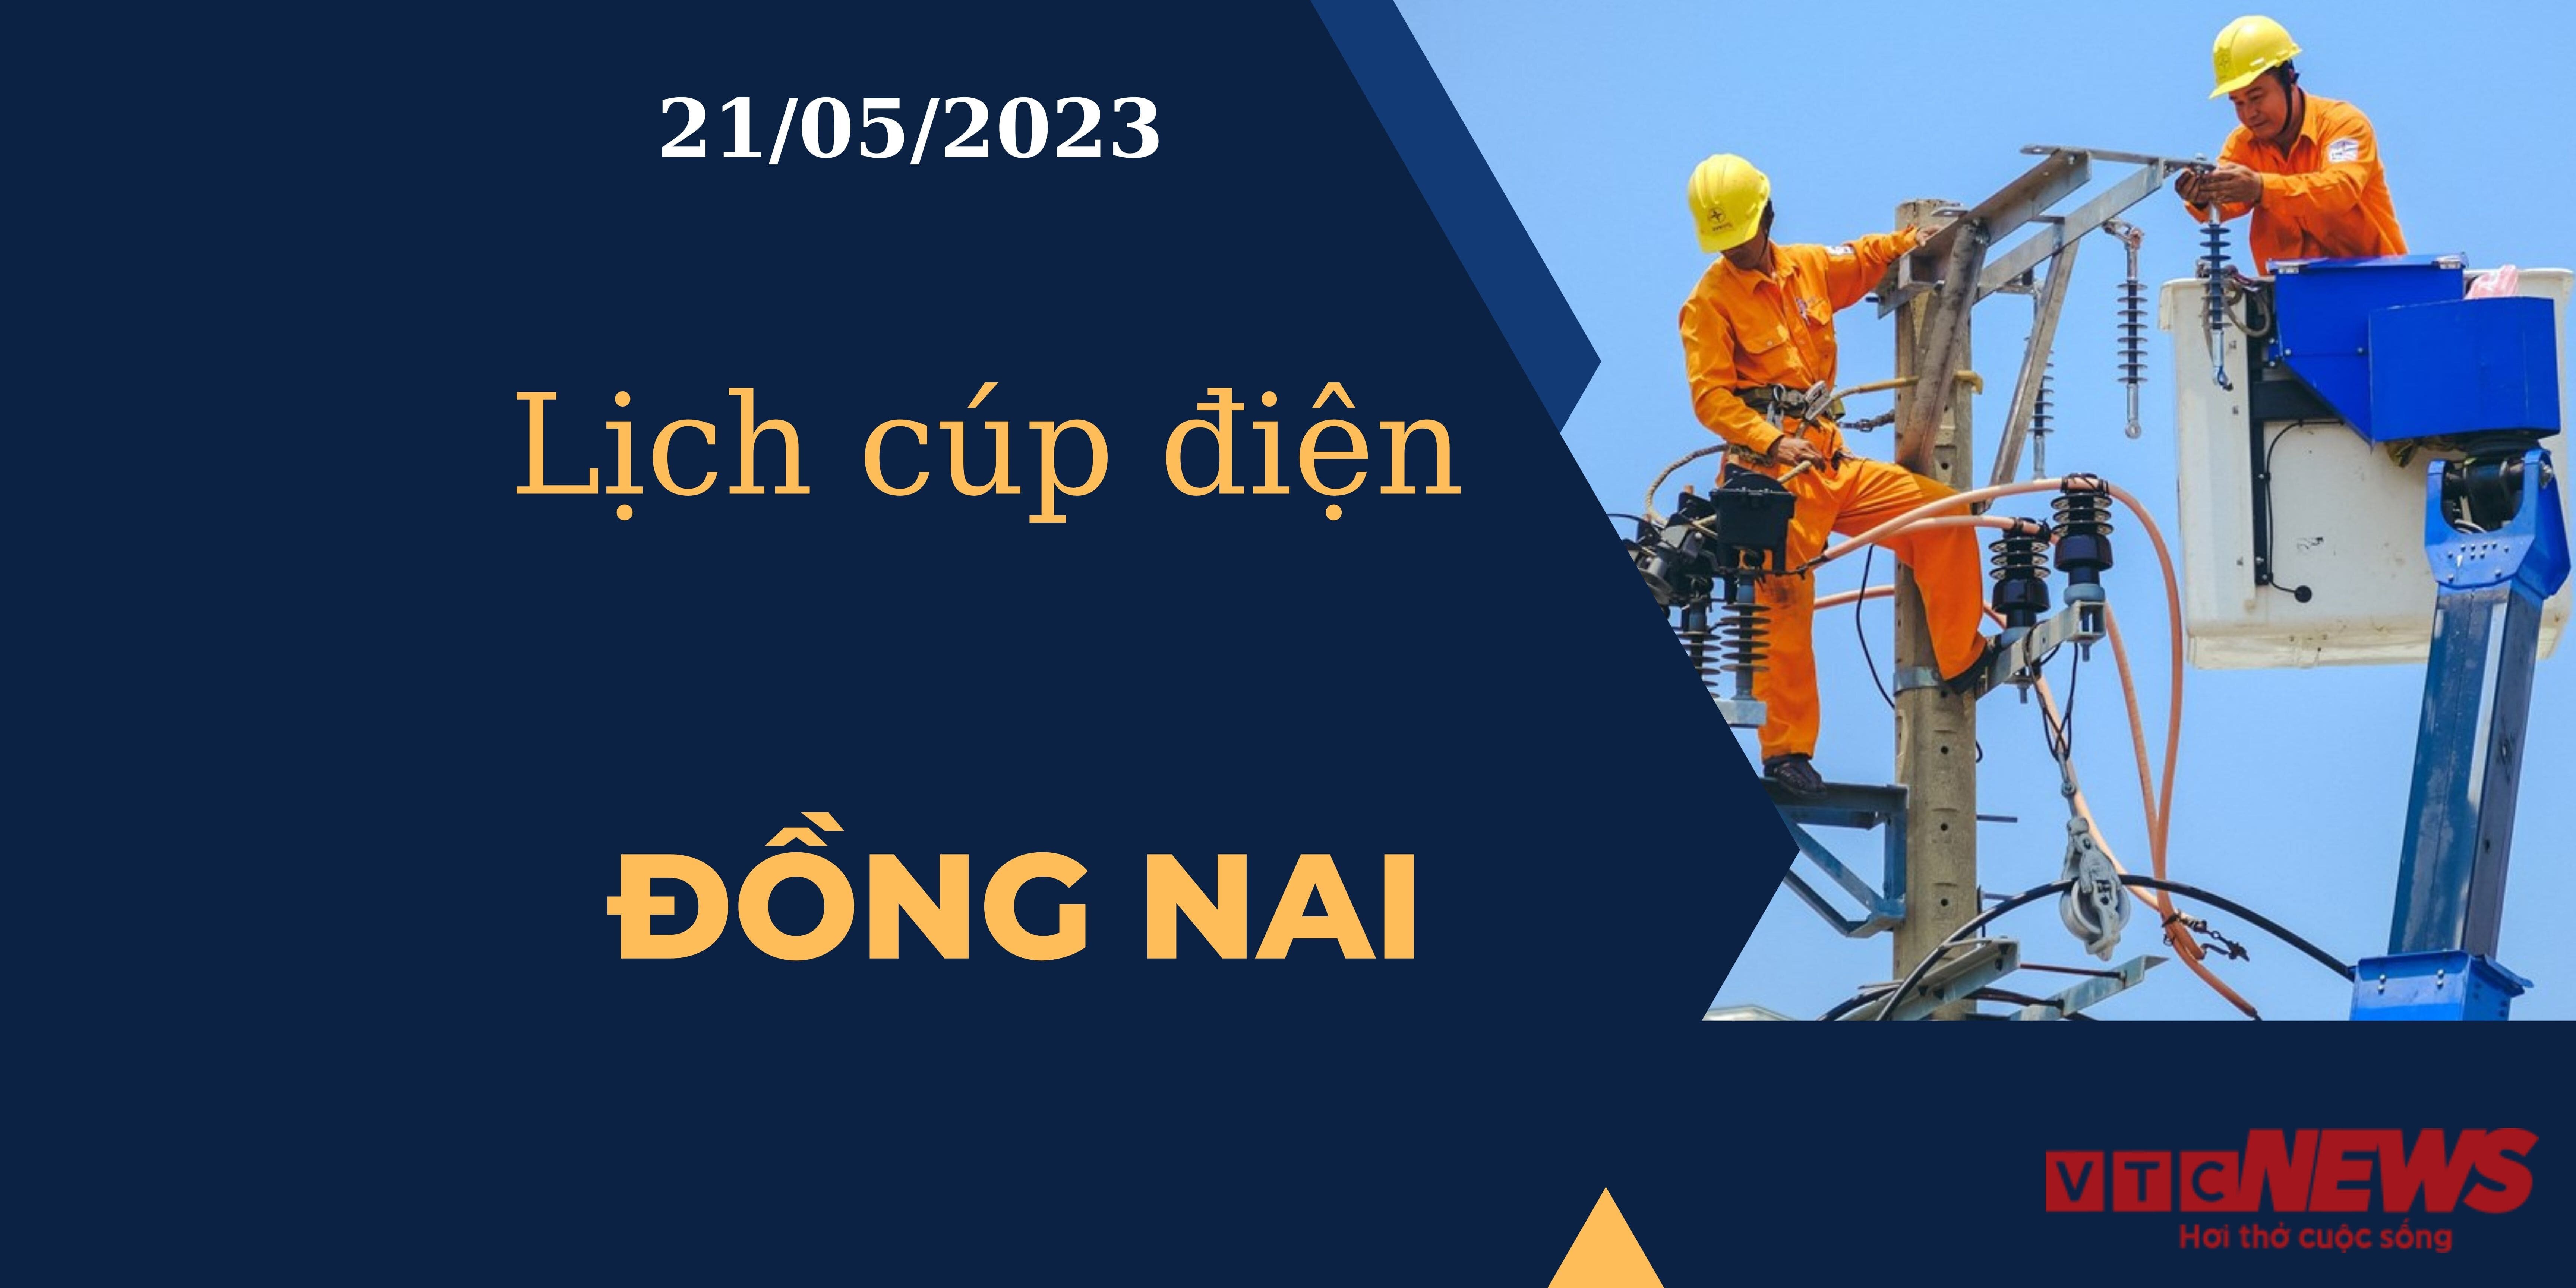 Lịch cúp điện hôm nay tại Đồng Nai ngày 21/05/2023 - 1